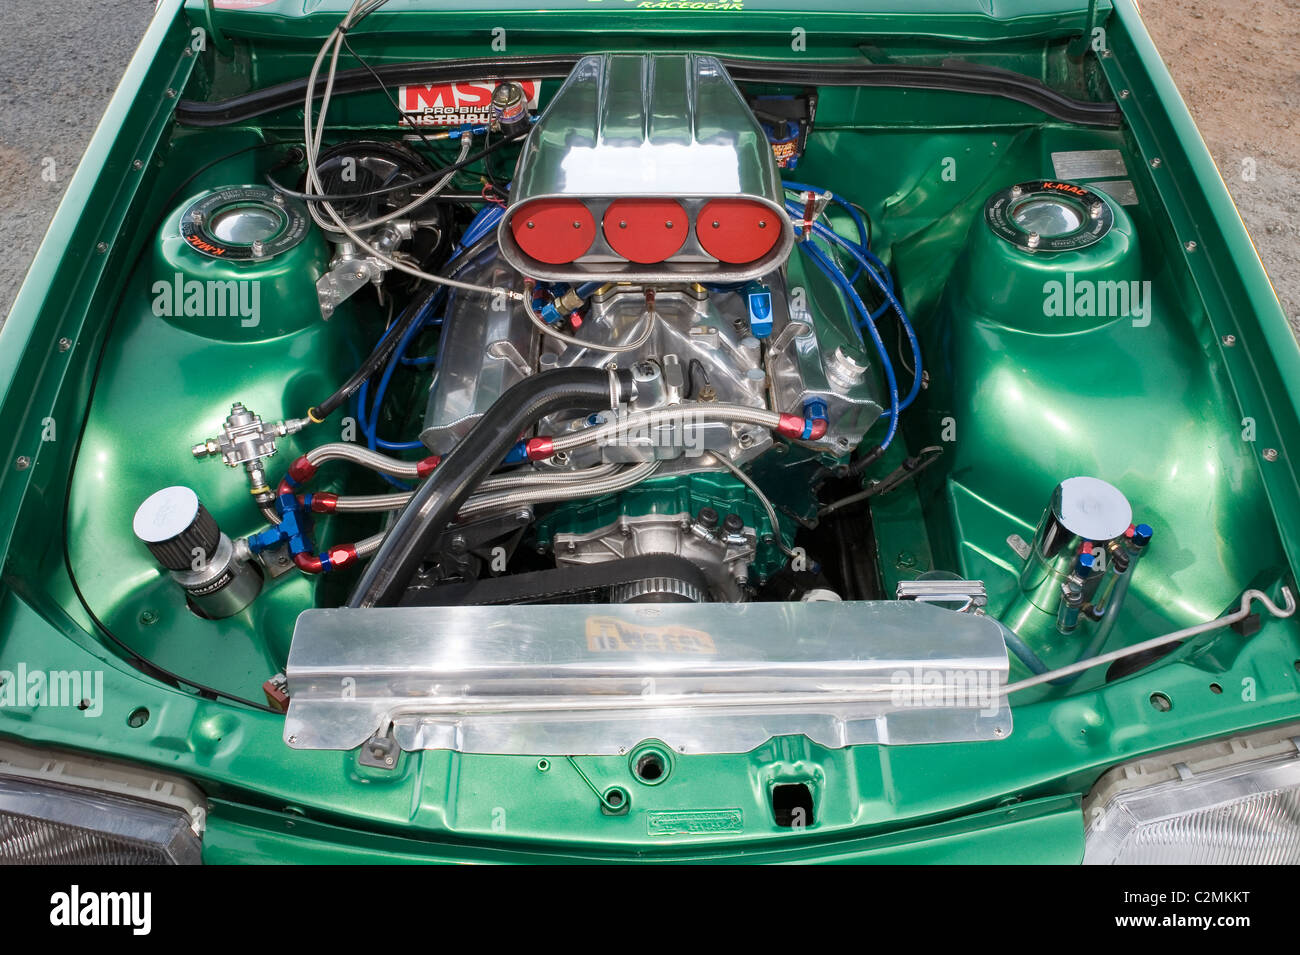 Fortemente modificati Holden motore V8 in un australiano drag racing Holden Commodore. Foto Stock